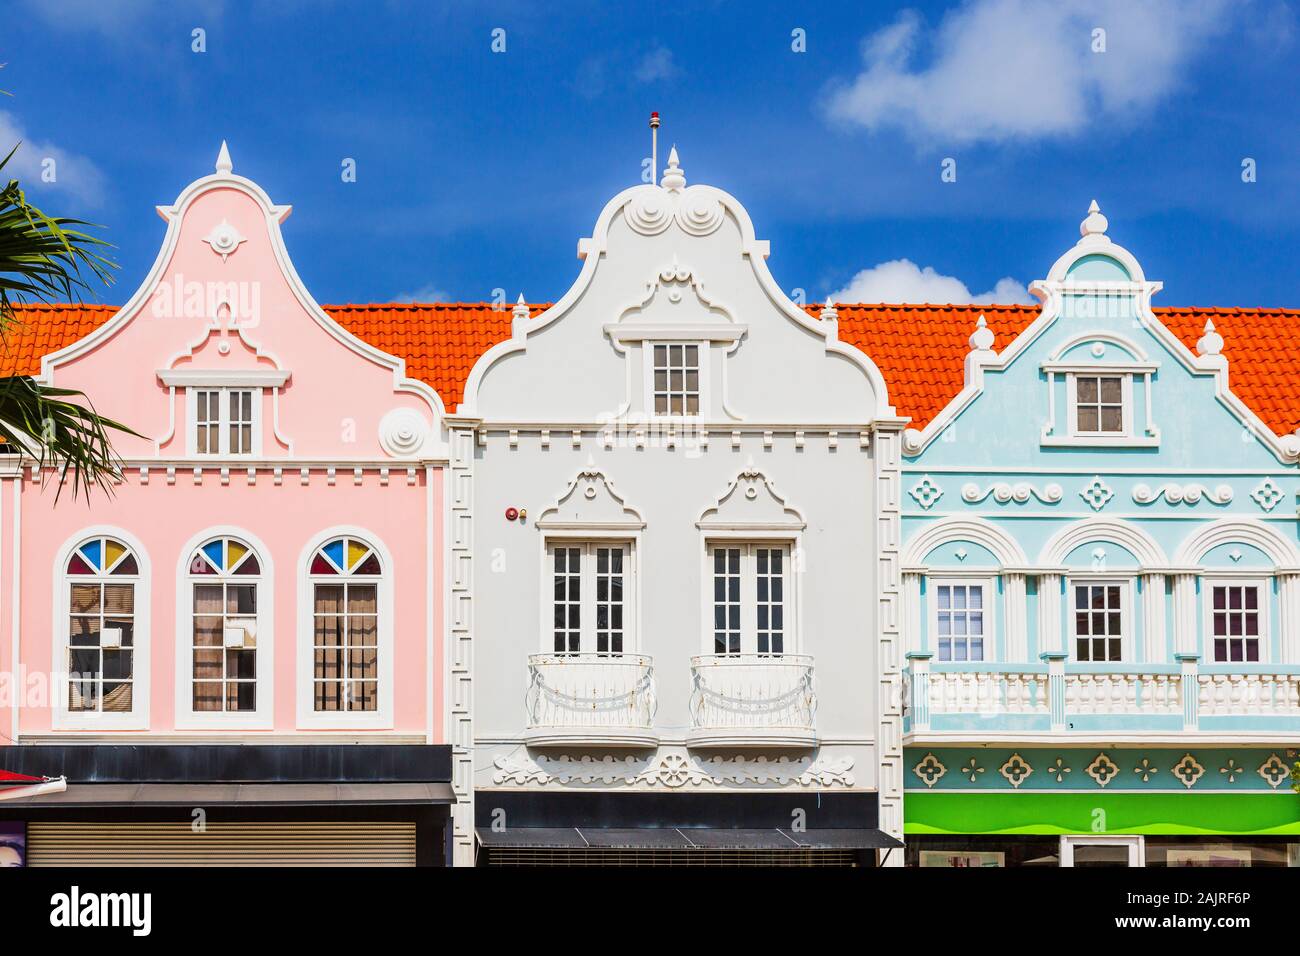 Aruba, Antilles néerlandaises. Détails de l'architecture de la vieille ville. Banque D'Images